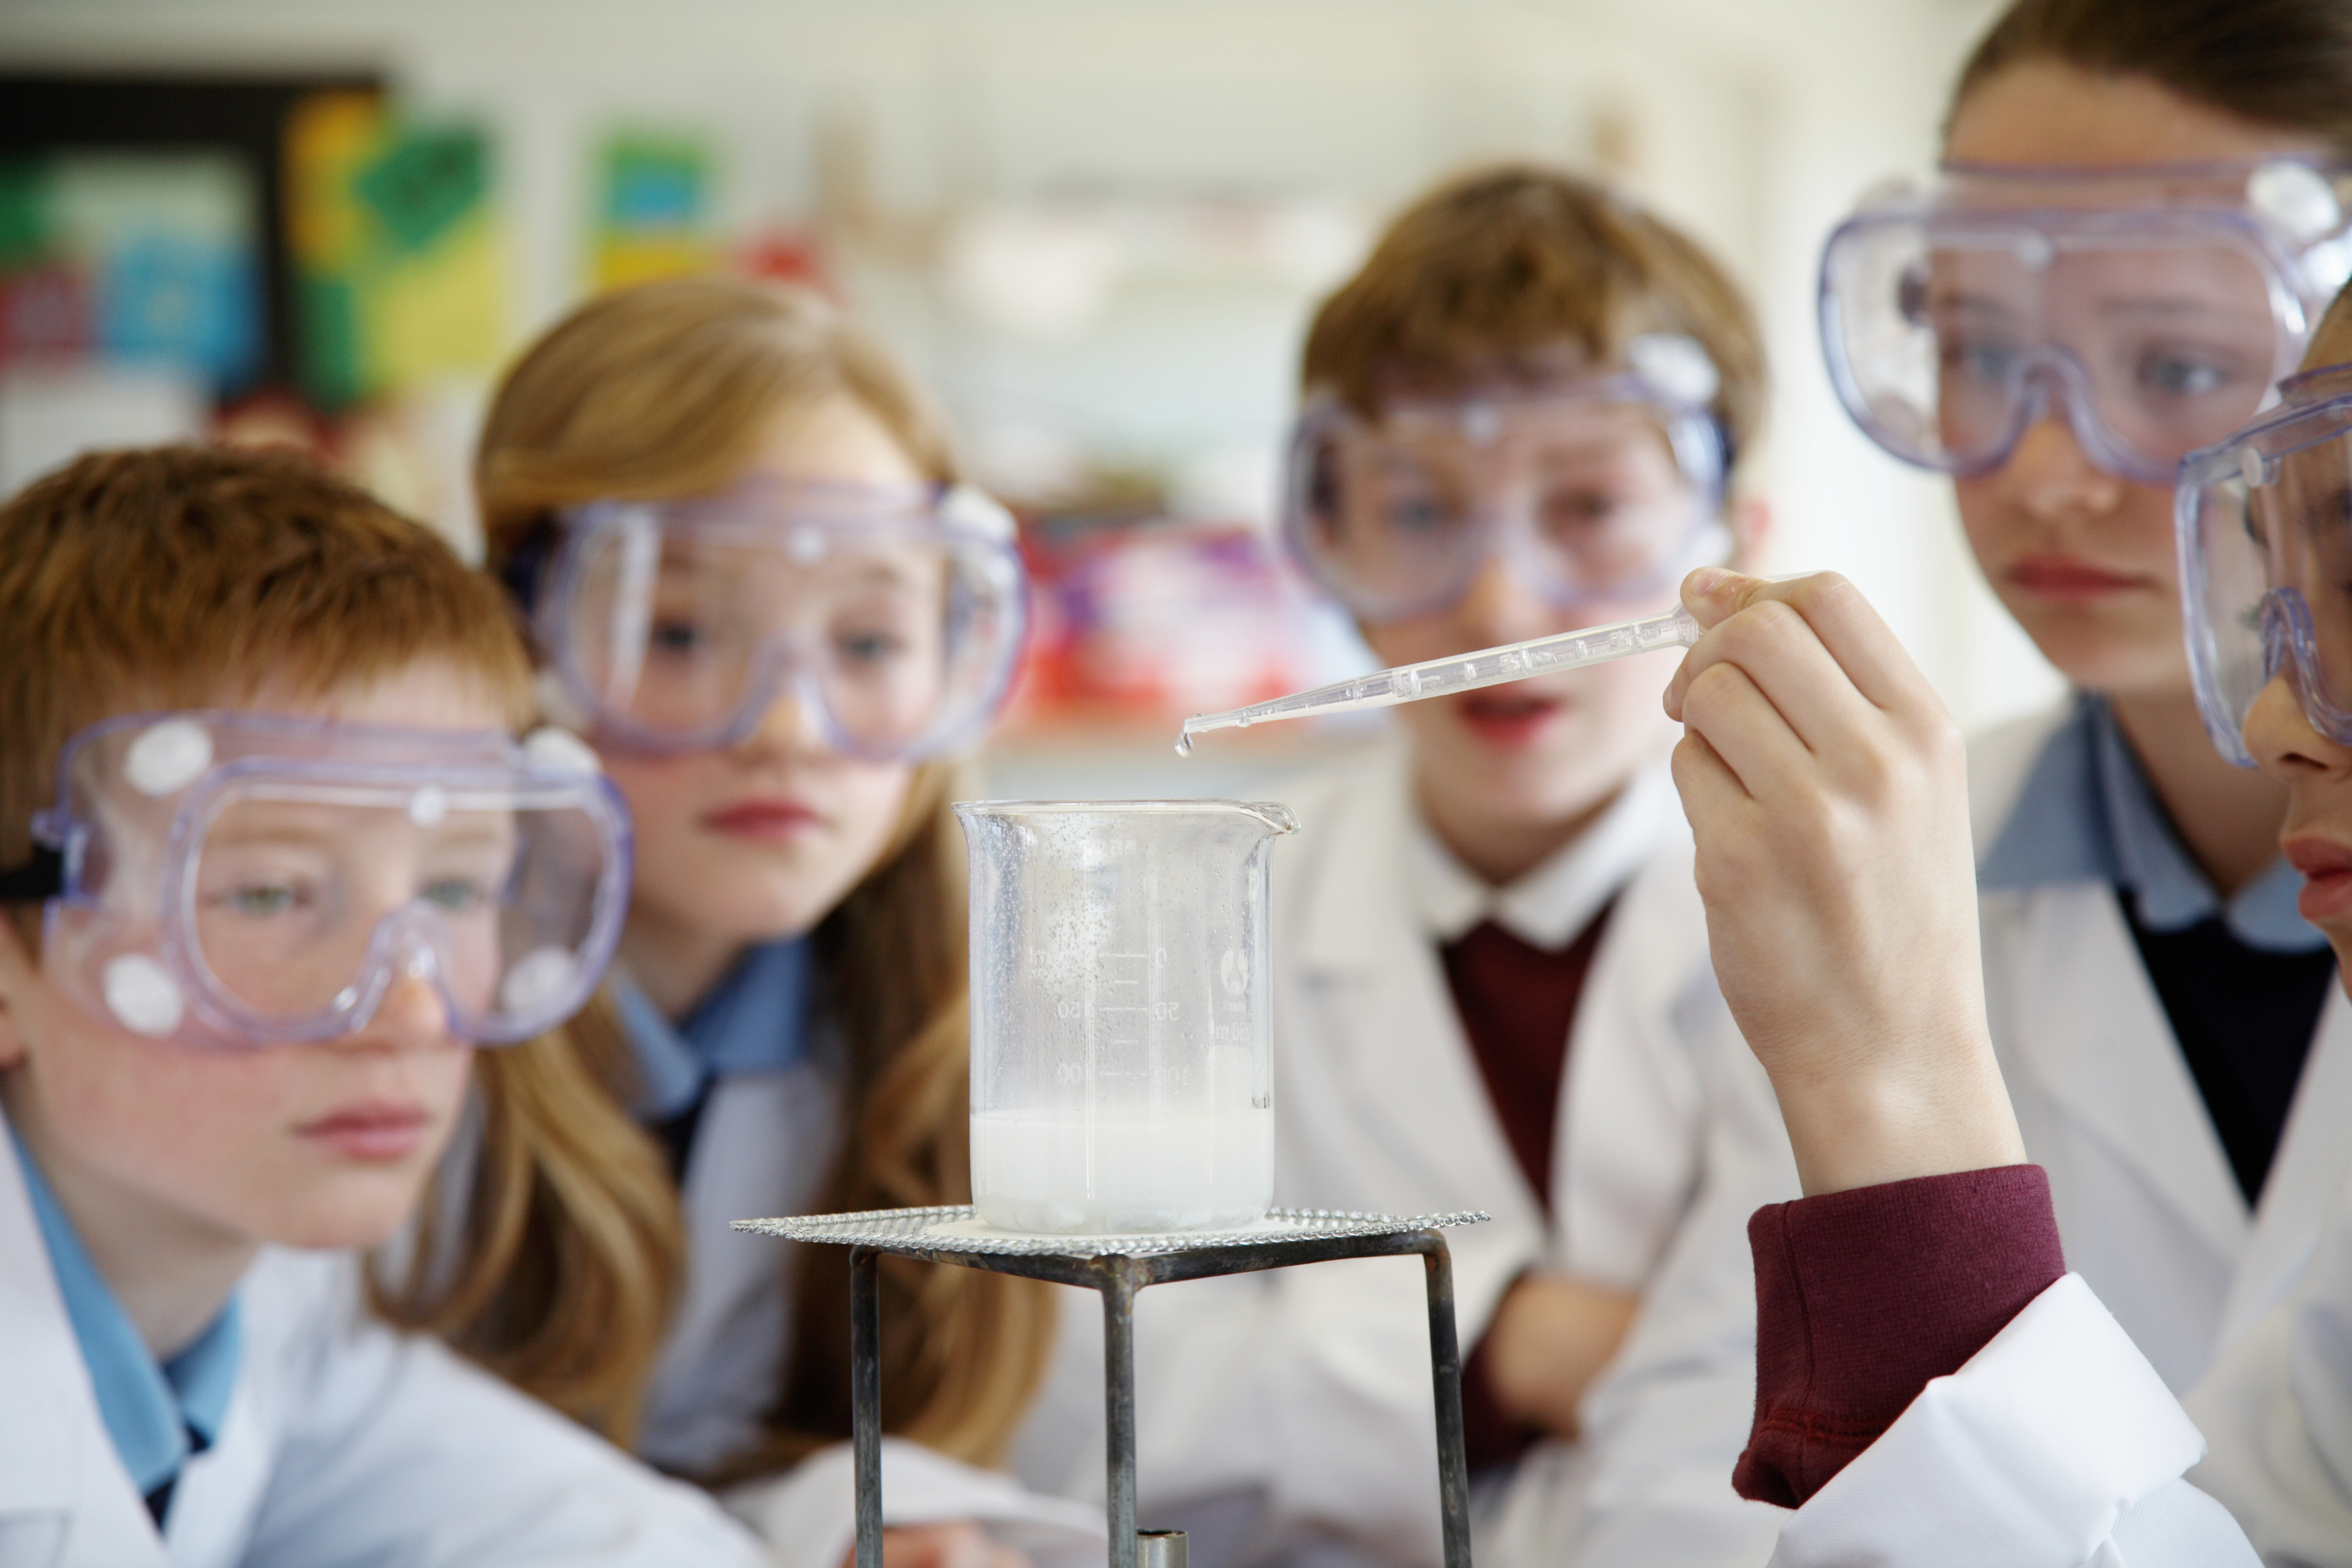 Организация научного сообщества. Урок химии. Наука в школе. Химия в школе. Дети на уроке химии.